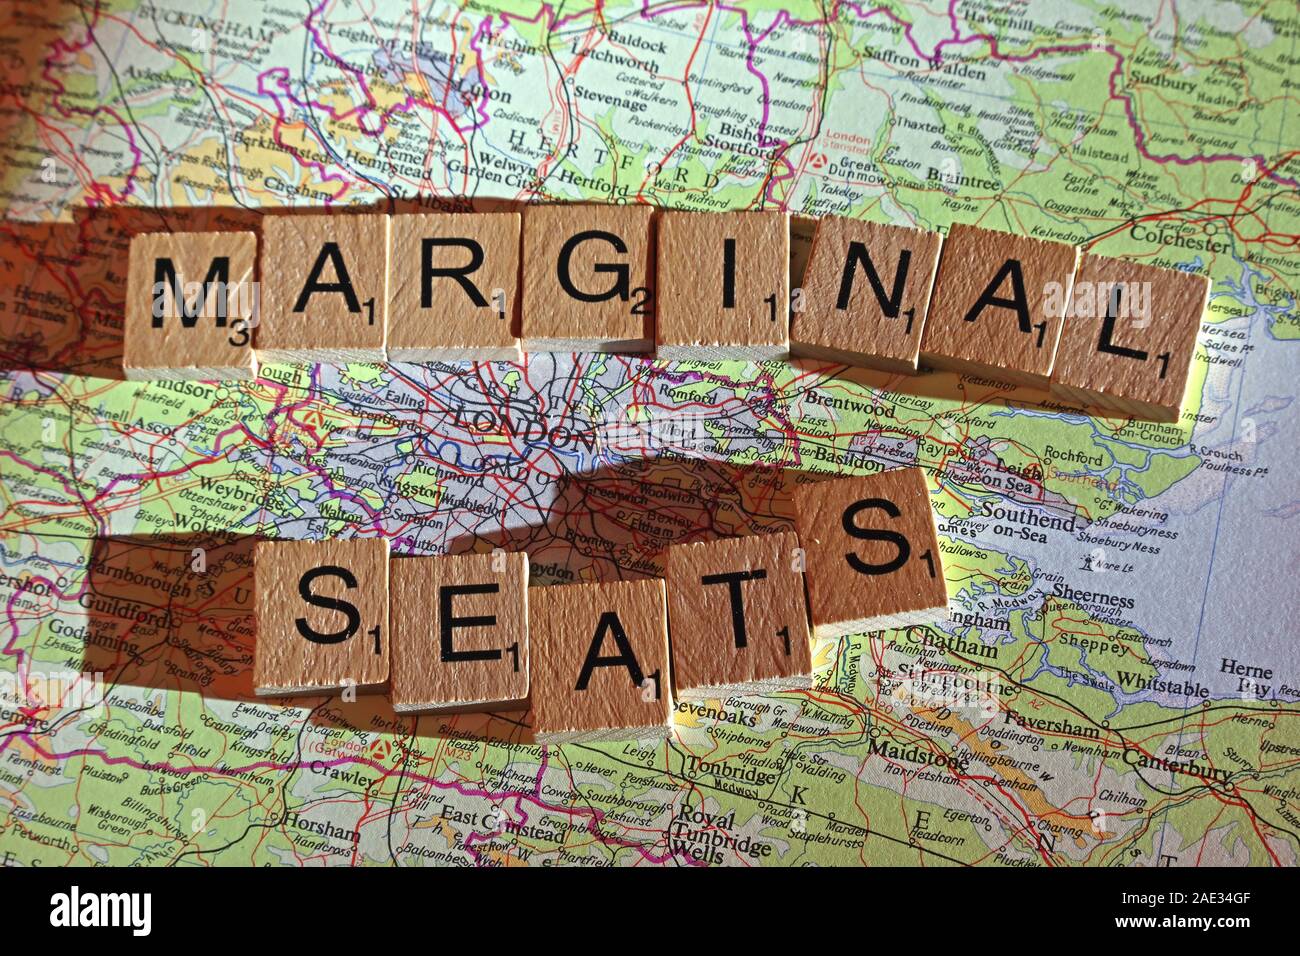 Sedi marginali di farro Scrabble in lettere su una mappa del Regno Unito - Elezioni generali, alle elezioni politiche di partito leader,,parti,rivendicazioni,dubbi Foto Stock